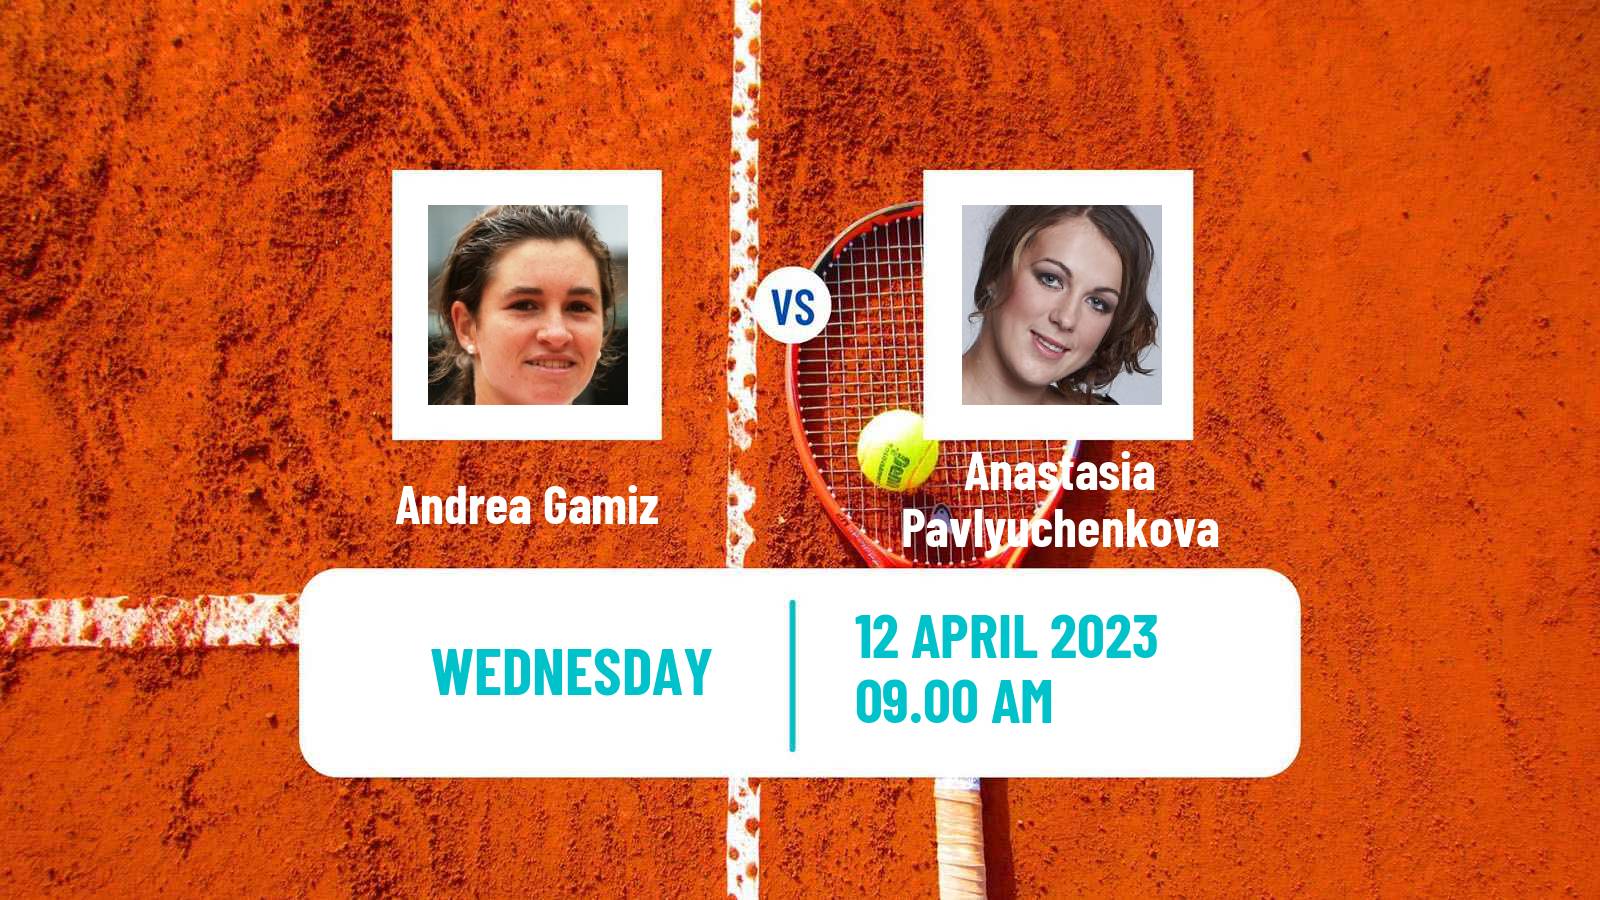 Tennis ITF Tournaments Andrea Gamiz - Anastasia Pavlyuchenkova